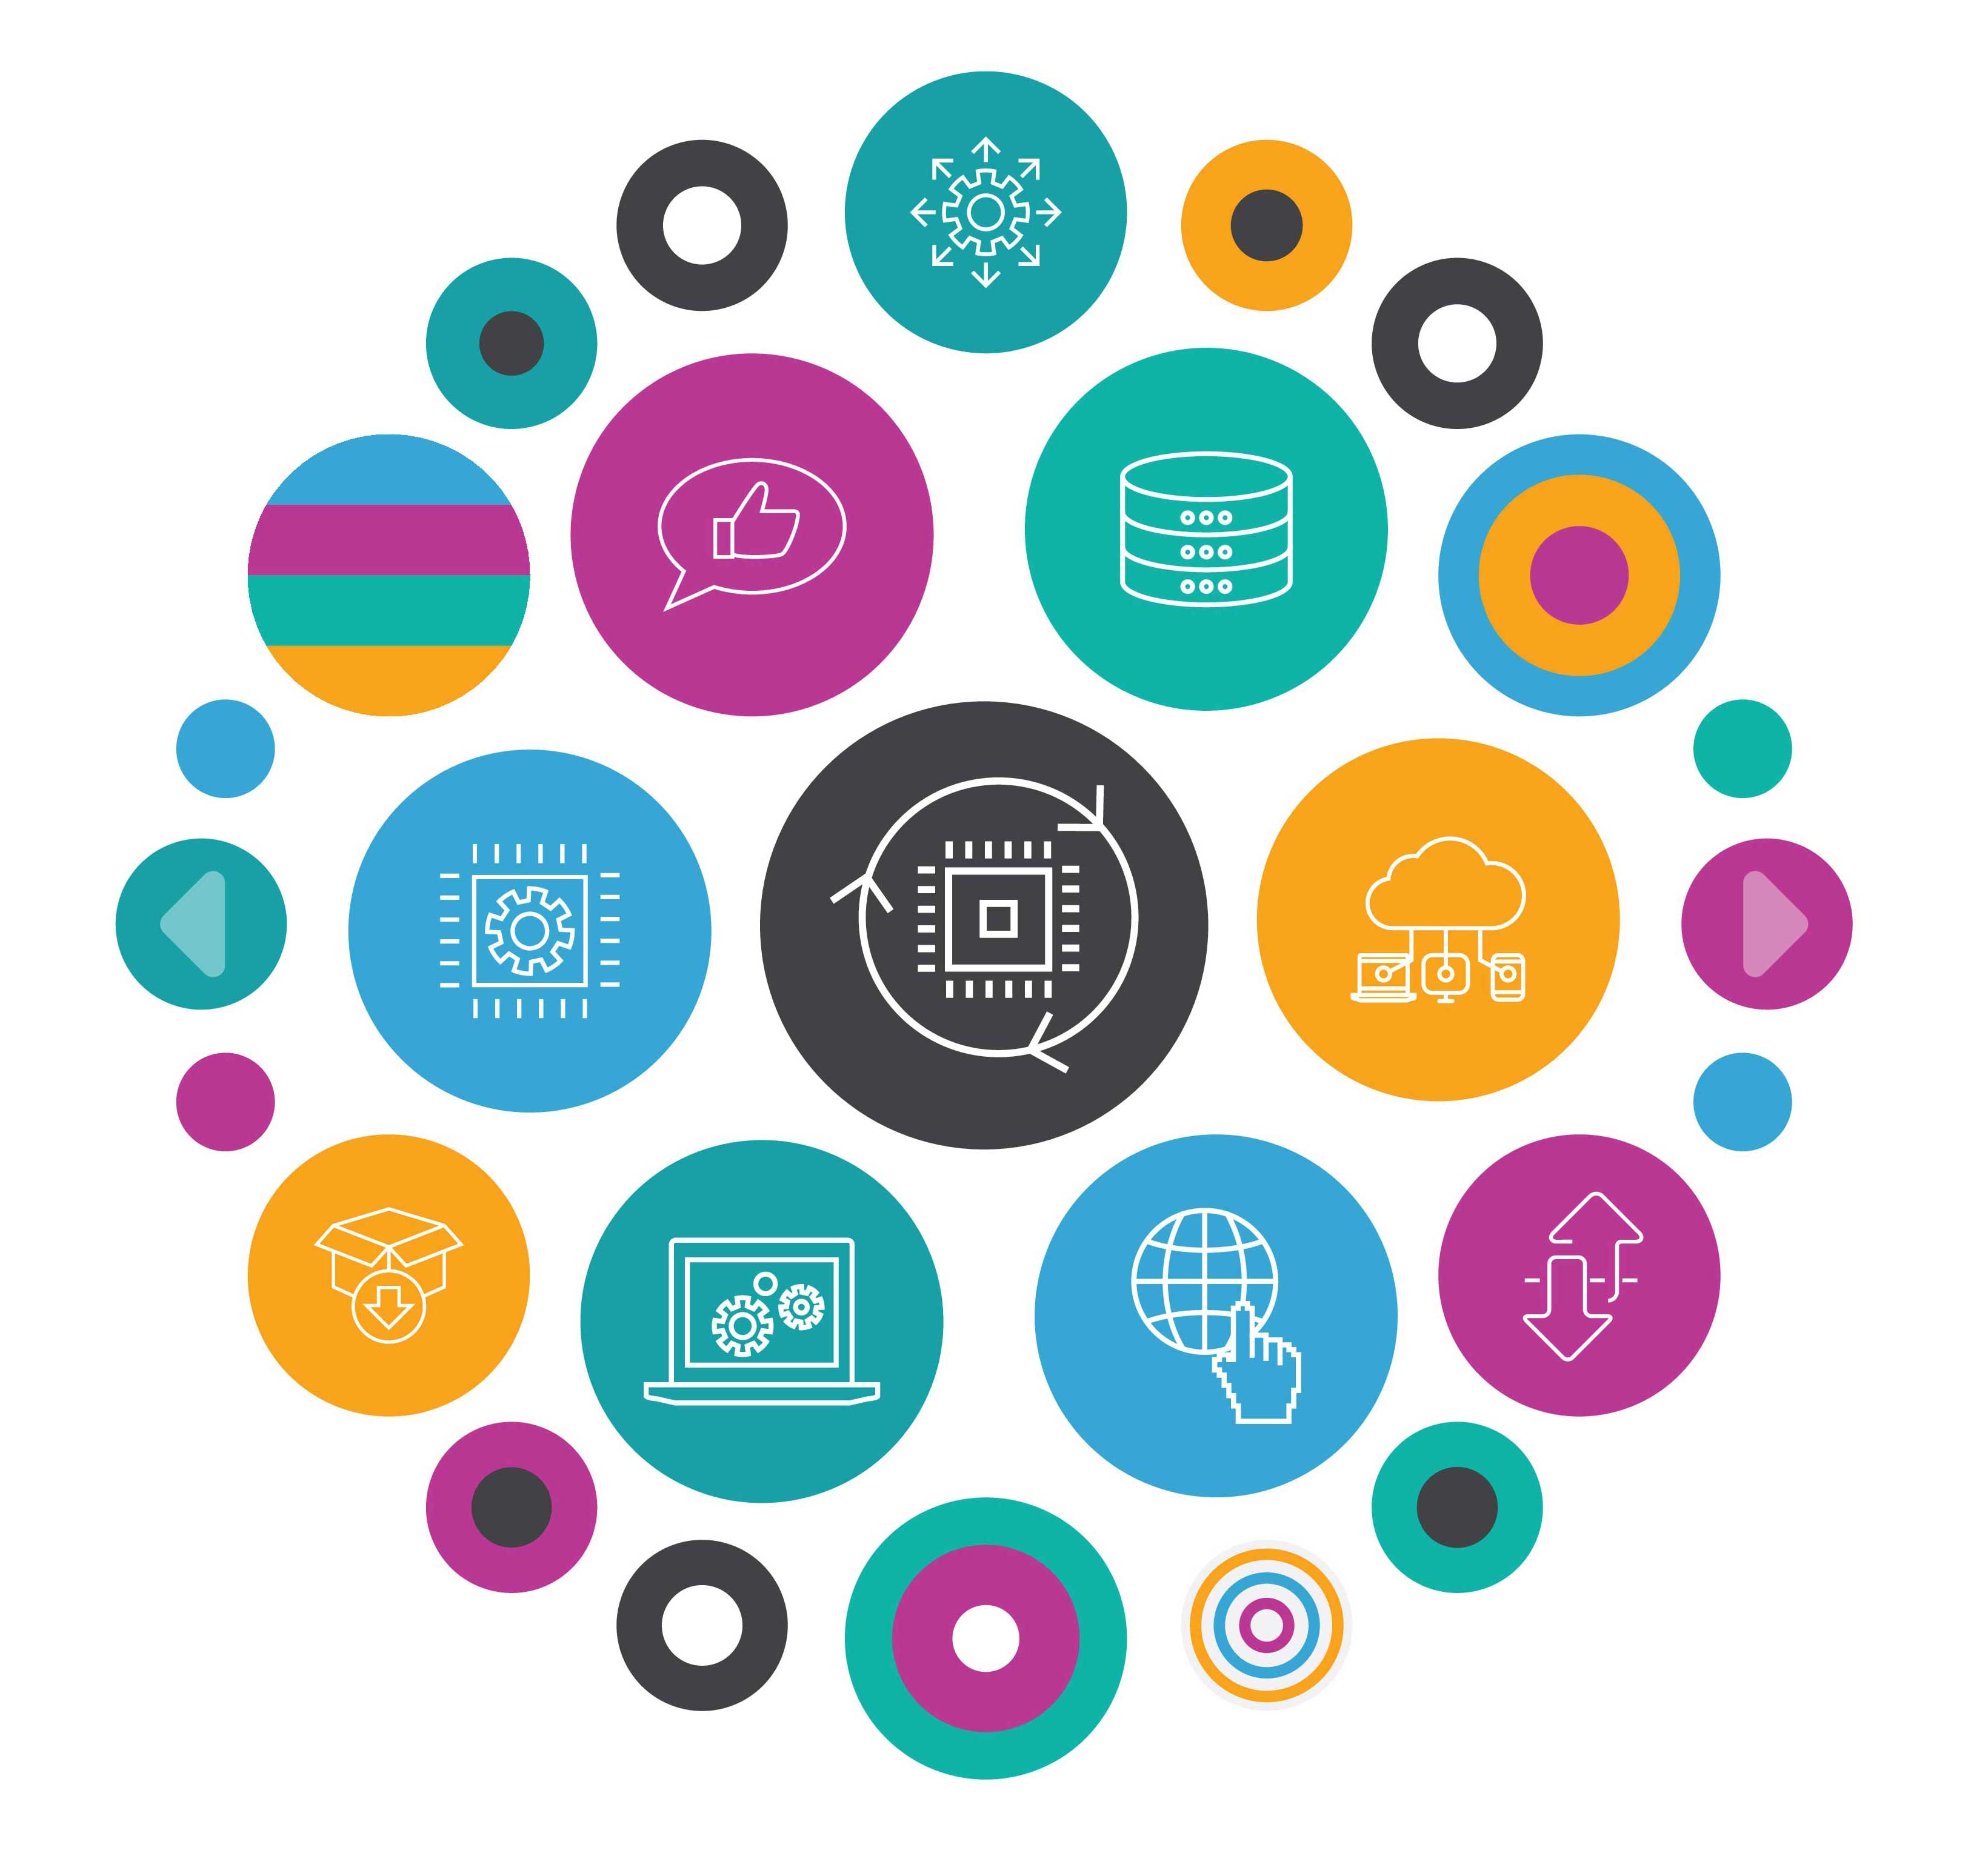 En cirkel sammensat af flere små cirkler i forskellige farver og med forskellige computersymboler, digital illustration.